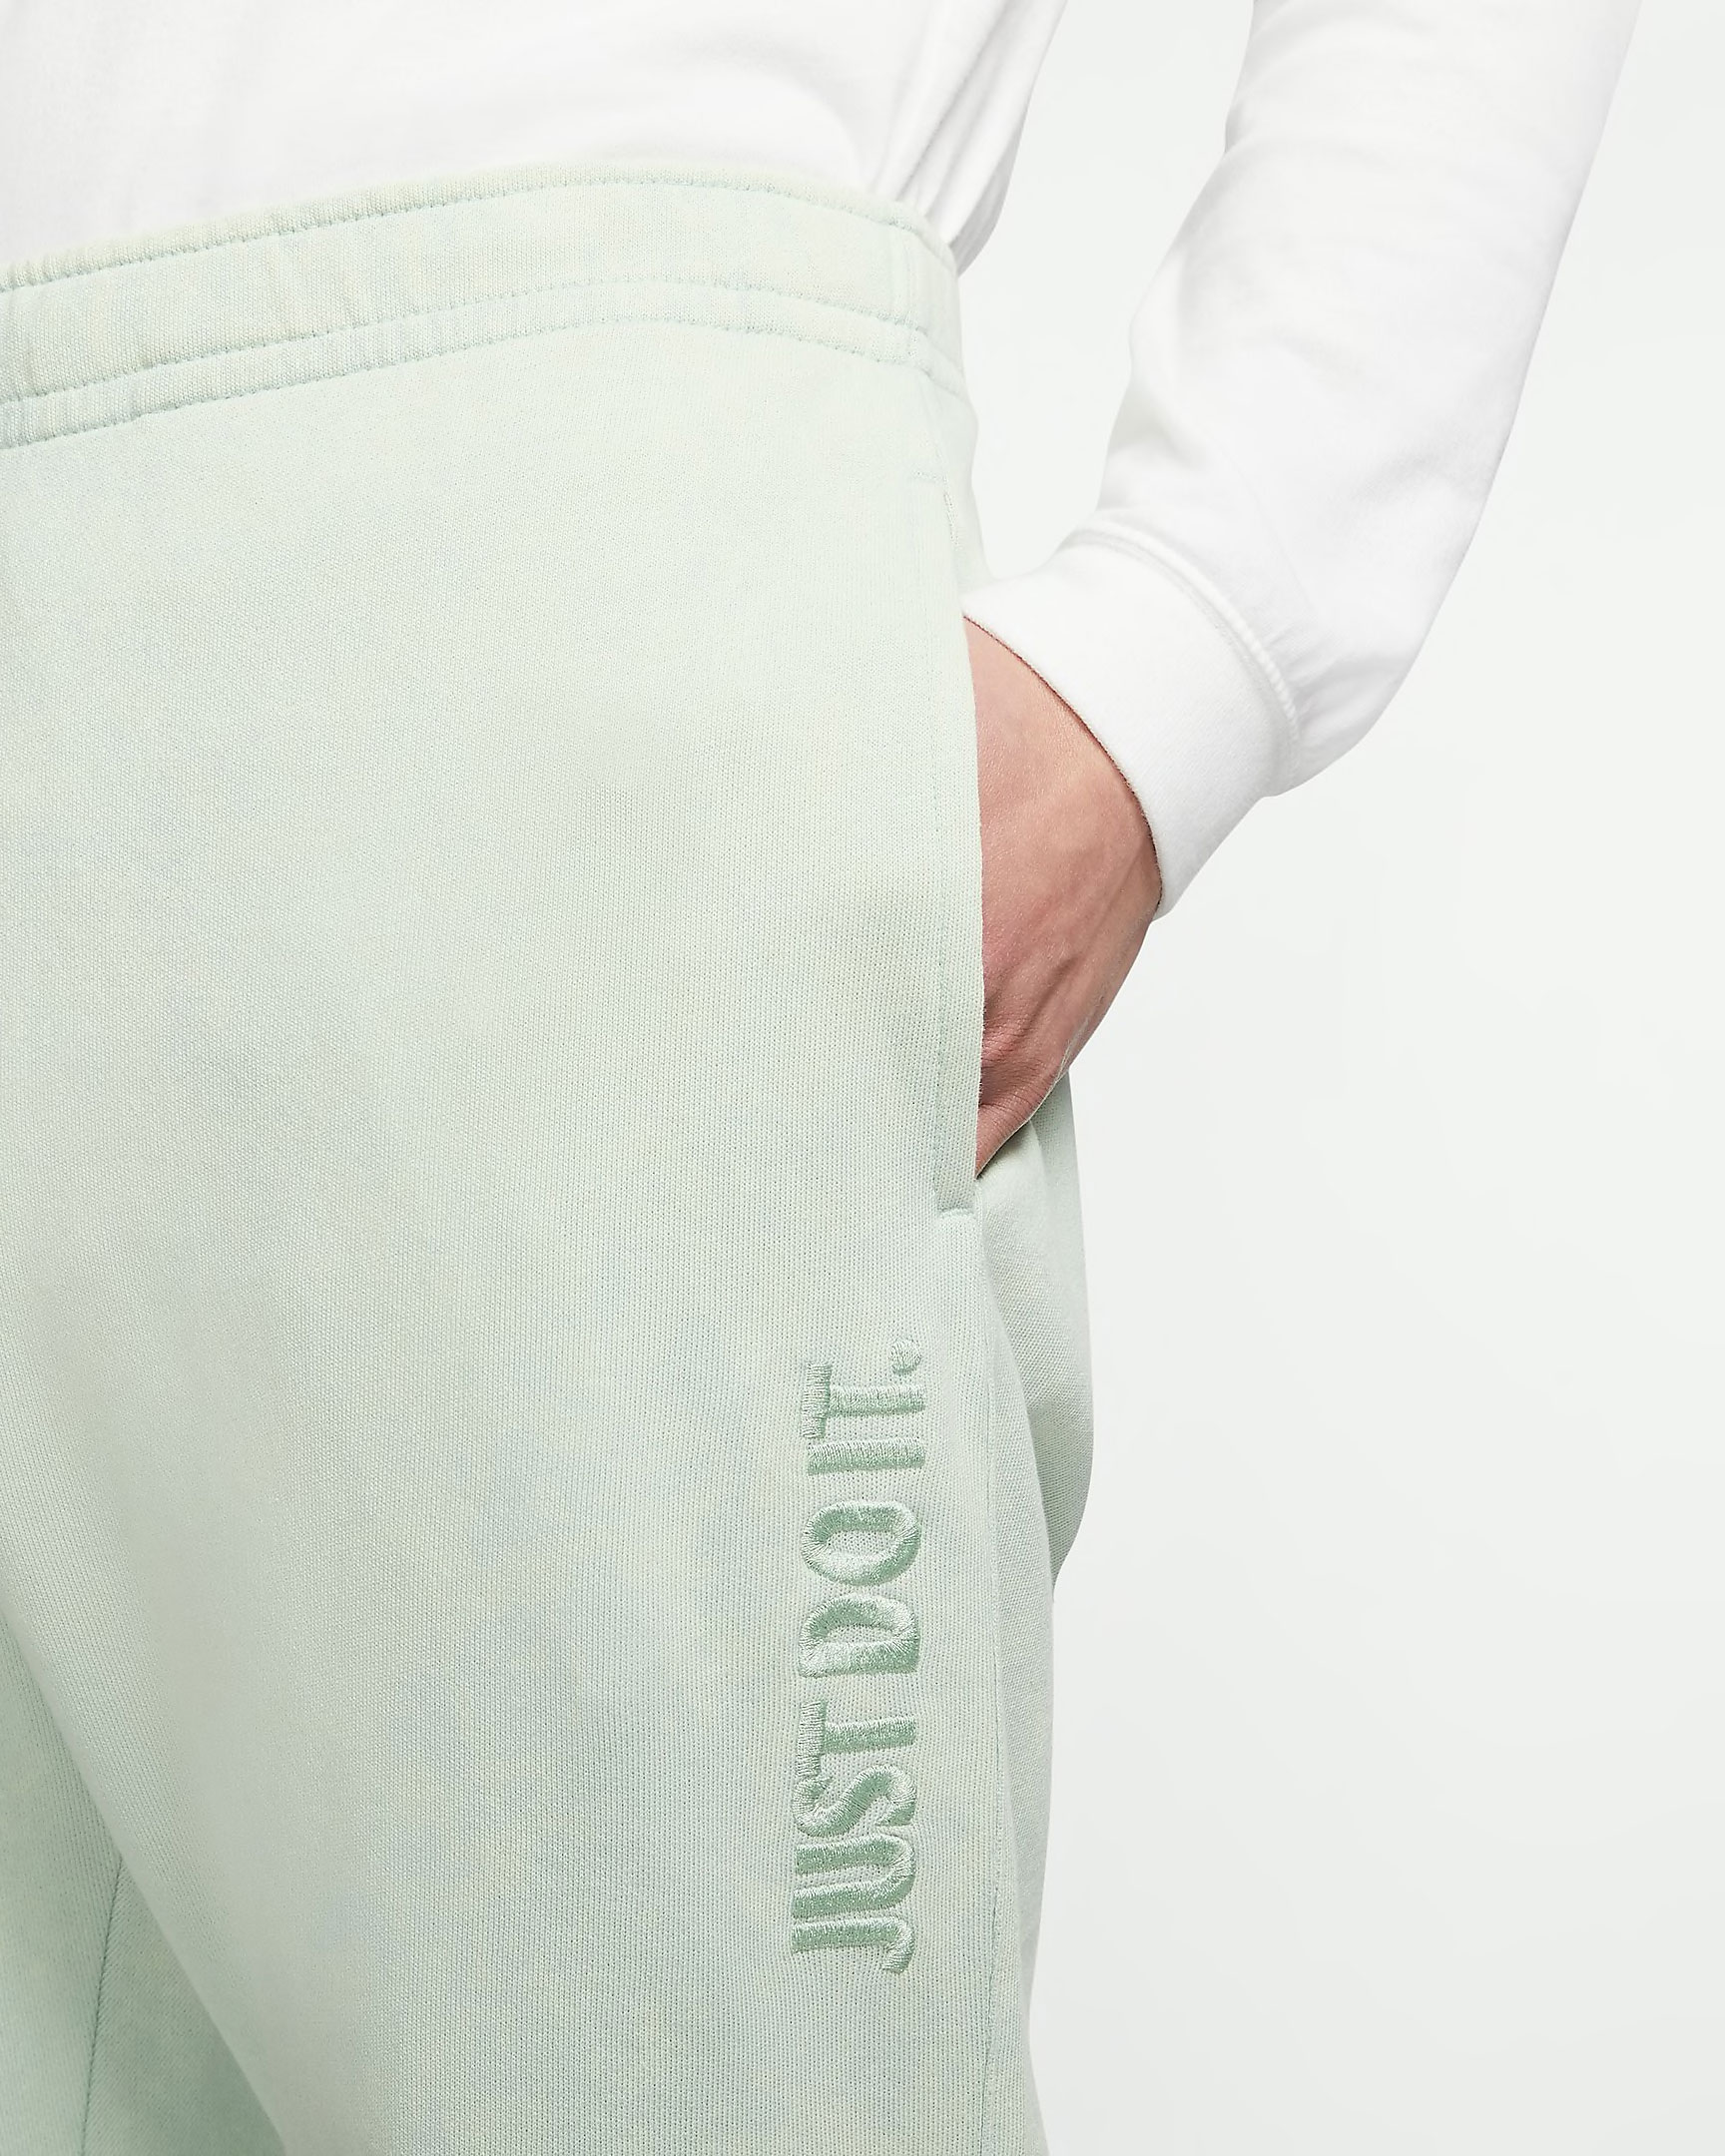 nike-sportswear-pistachio-frost-jdi-jogger-pants-2